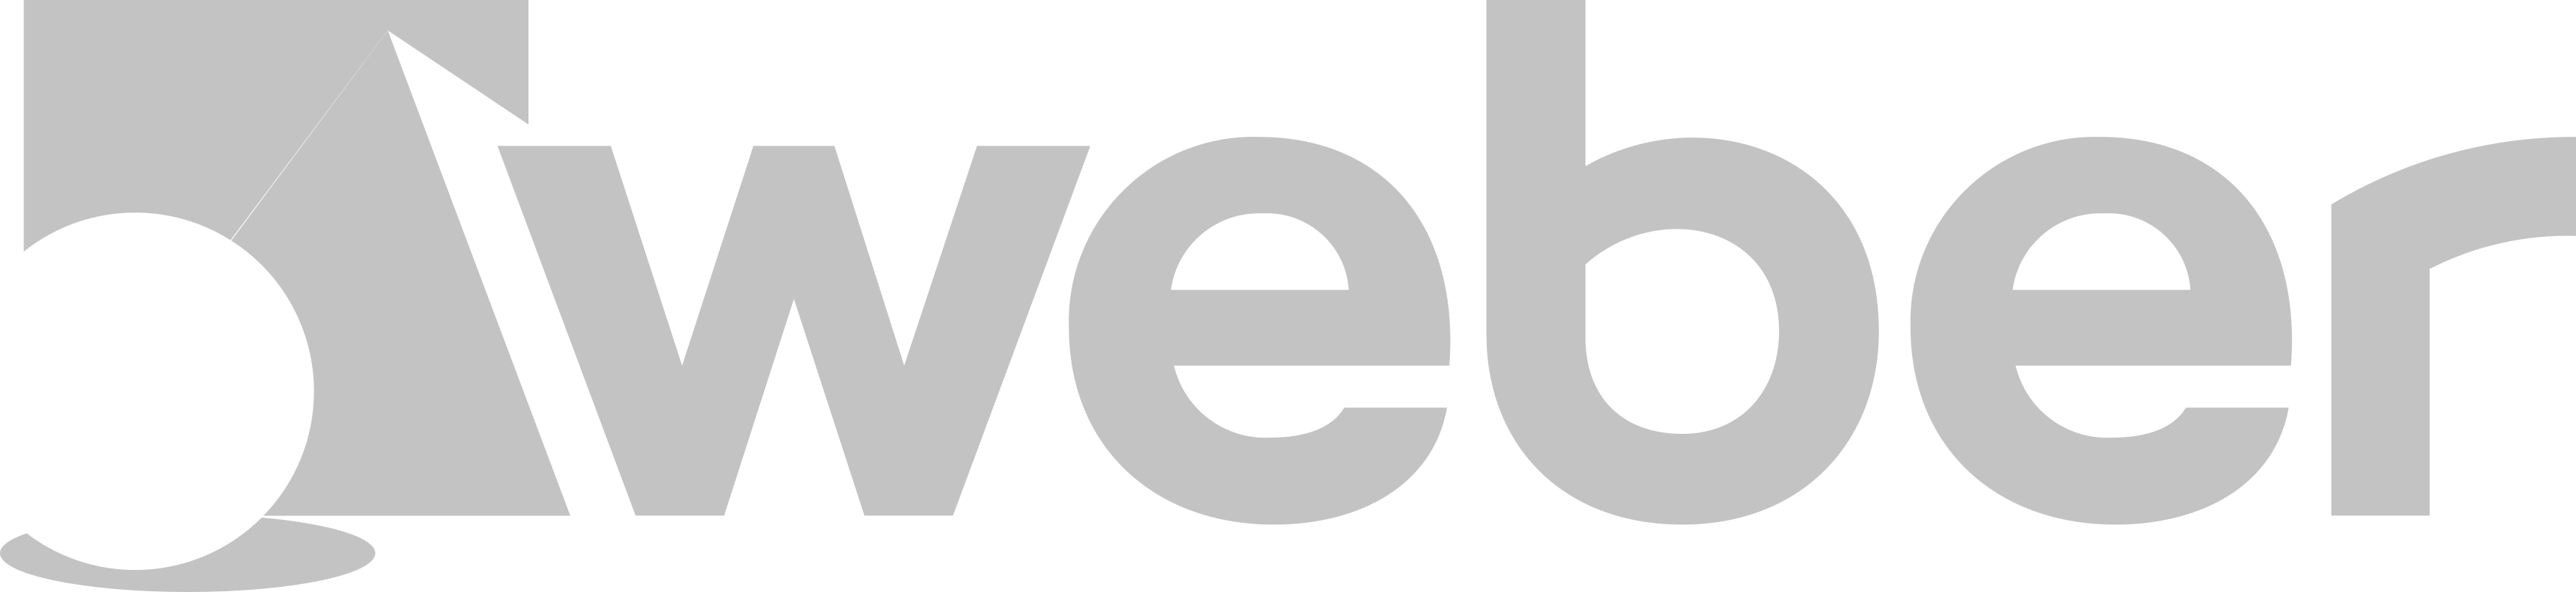 weber-saint-gobain-logo